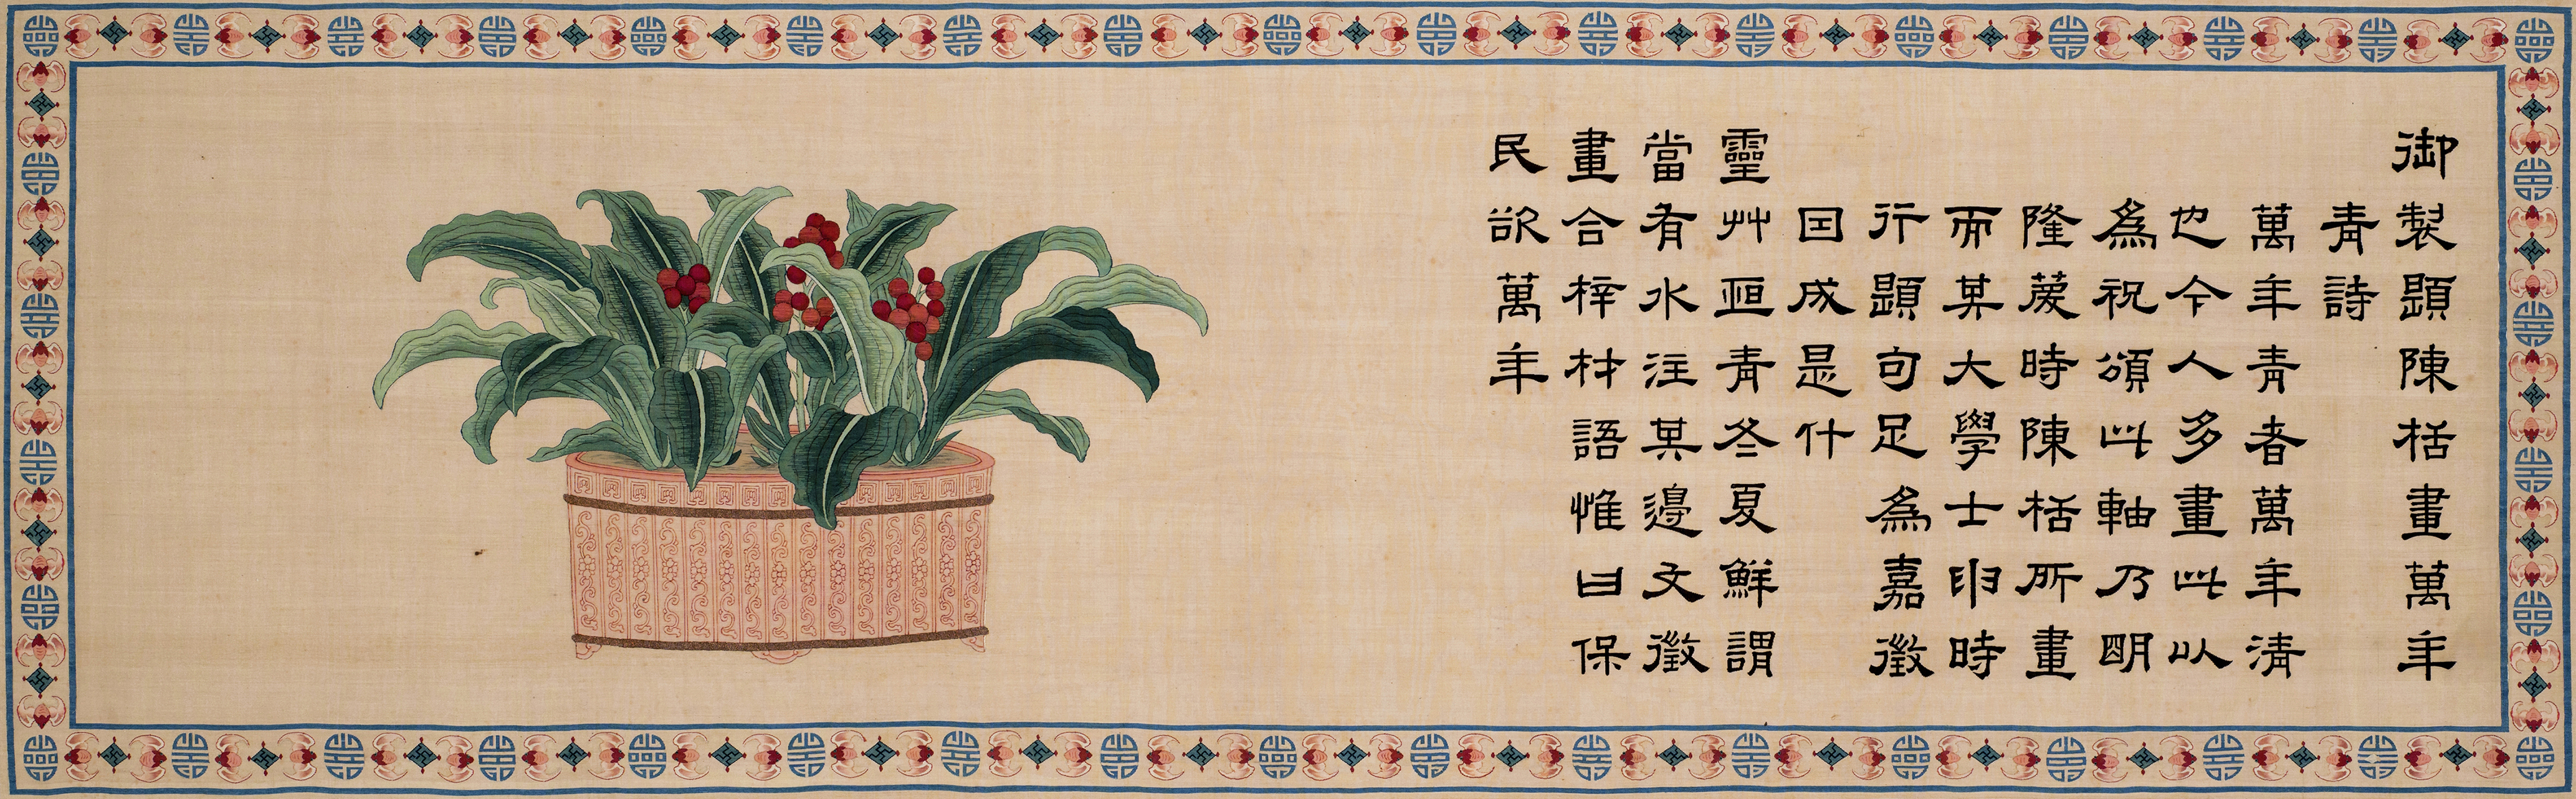 【华艺国际18春拍】从一件清宫旧藏缂丝书画探秘“一统万年清”的帝王